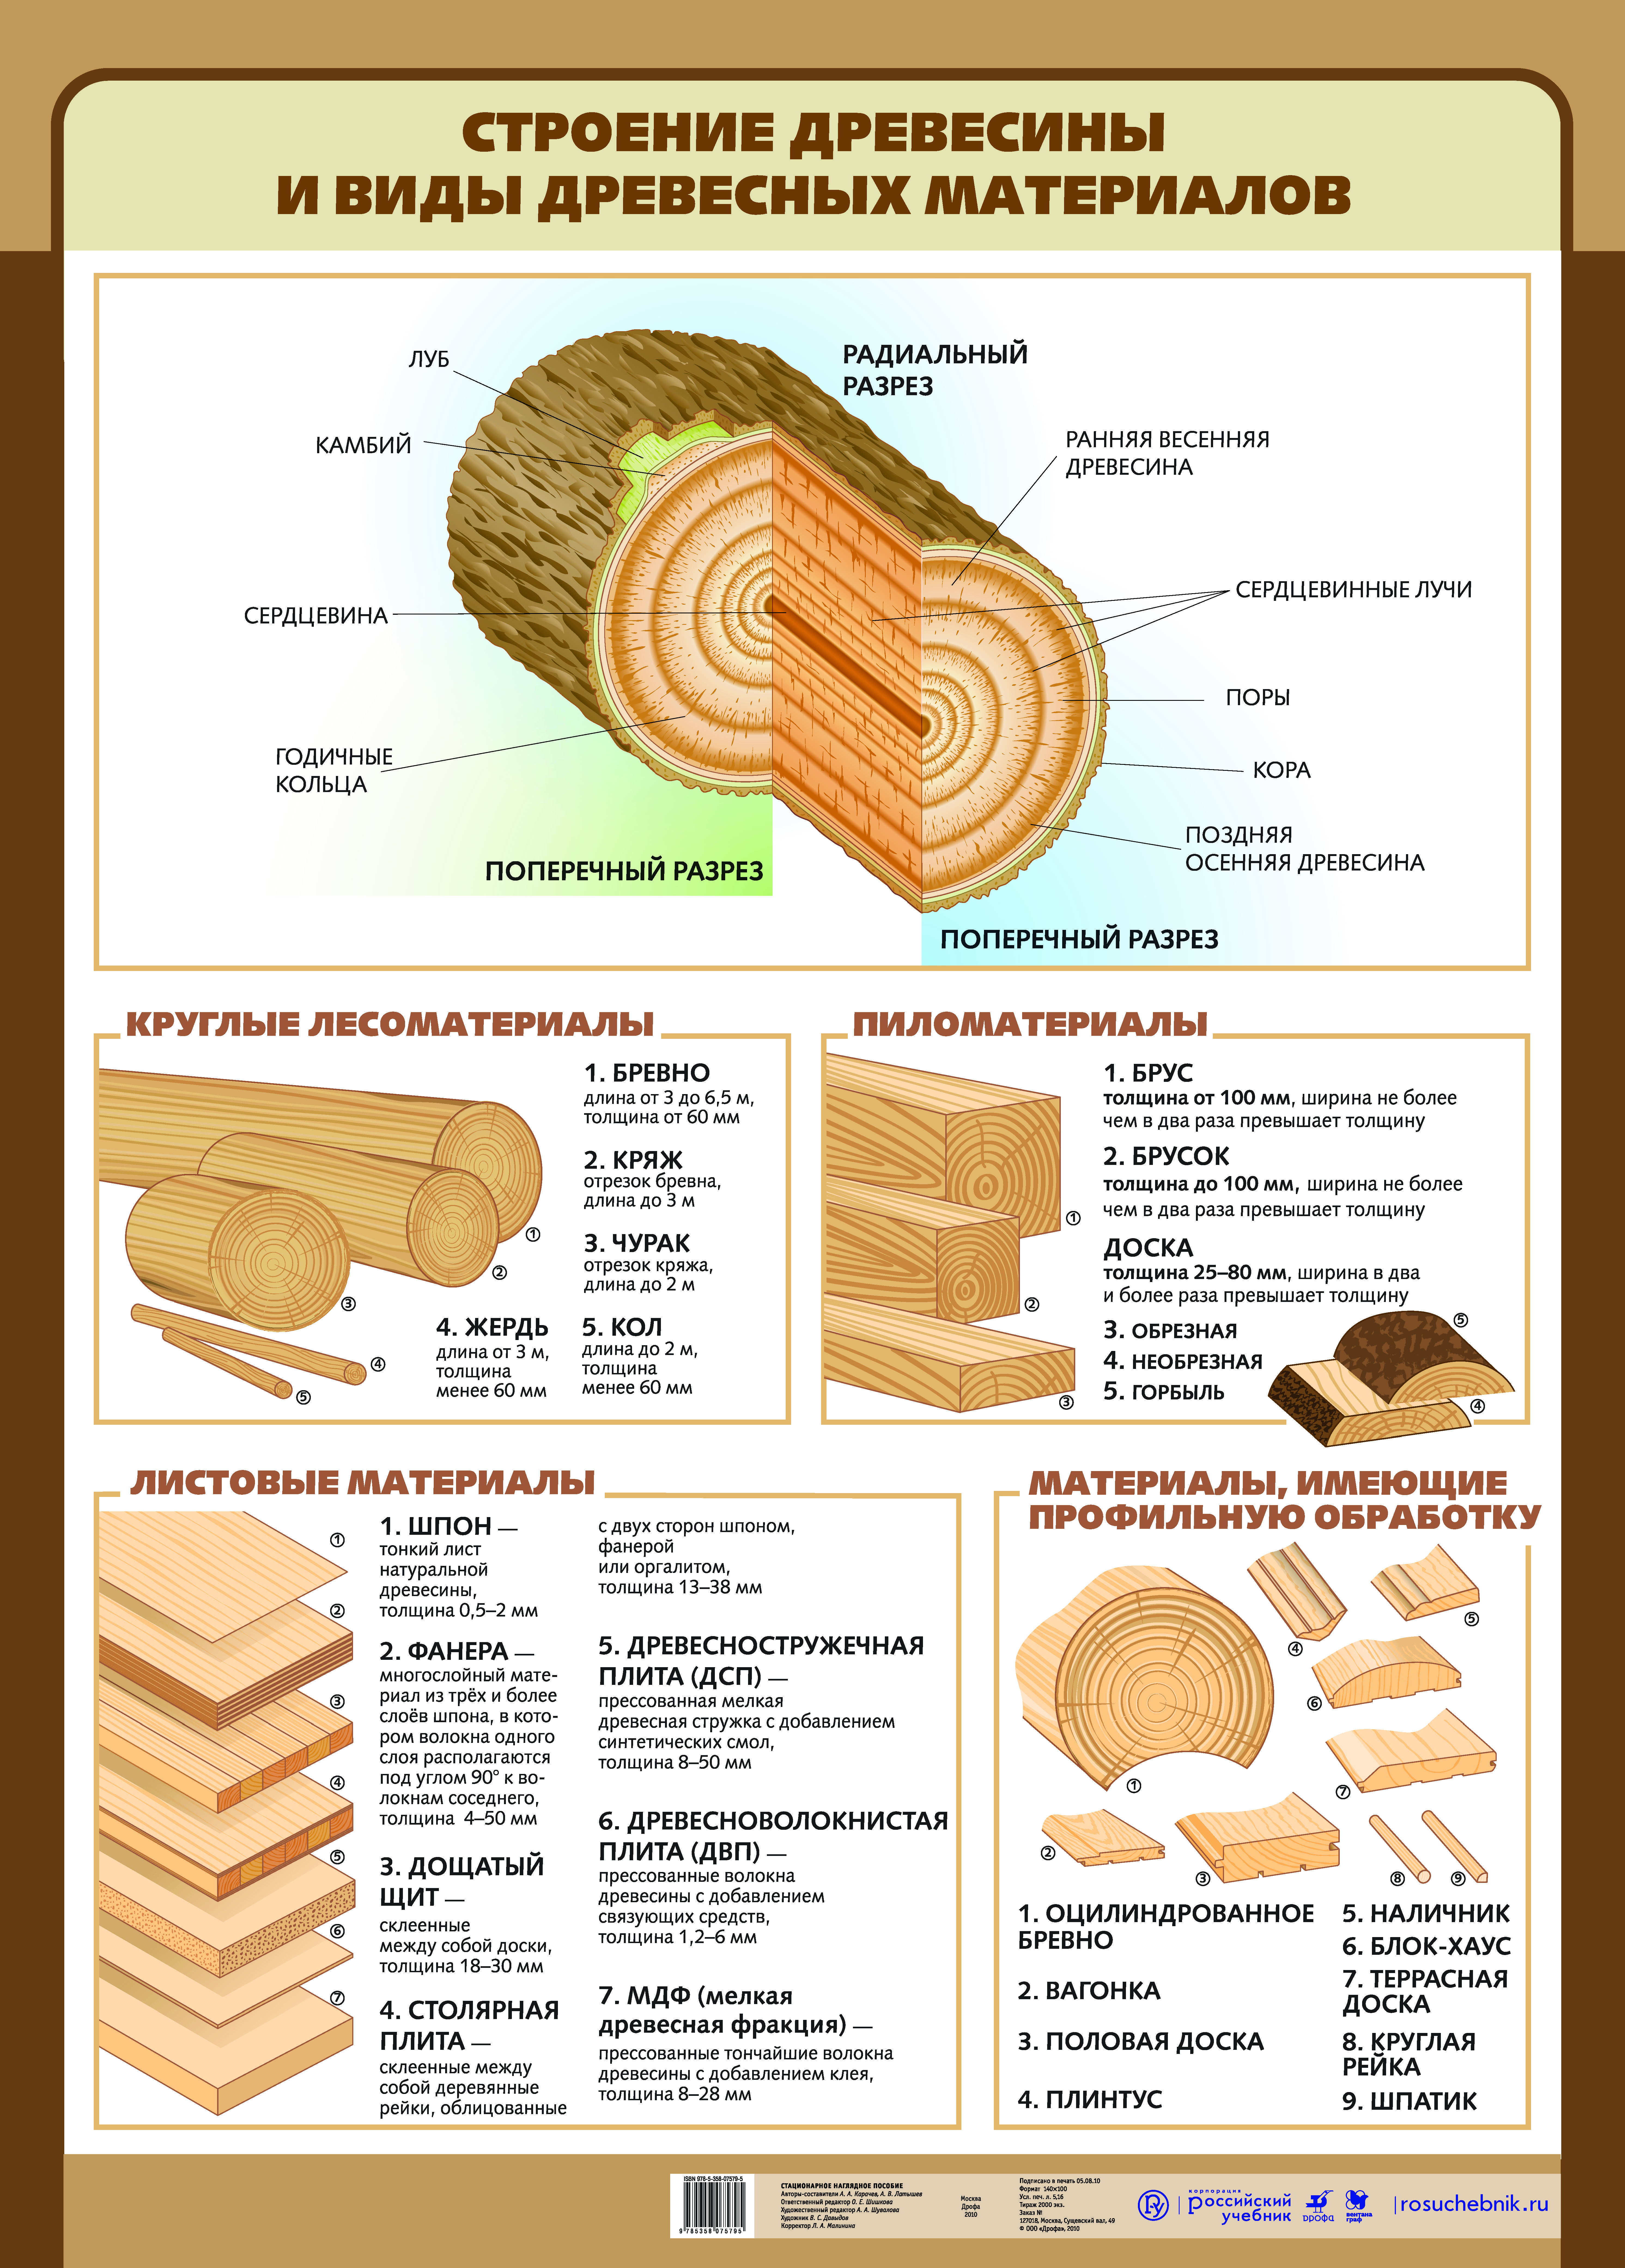 Виды деревообработки. Брус брусок доска классификация. Классификация круглых лесоматериалов по назначению. Основные типы пиломатериалов хвойных пород. Классификация сортности древесины.